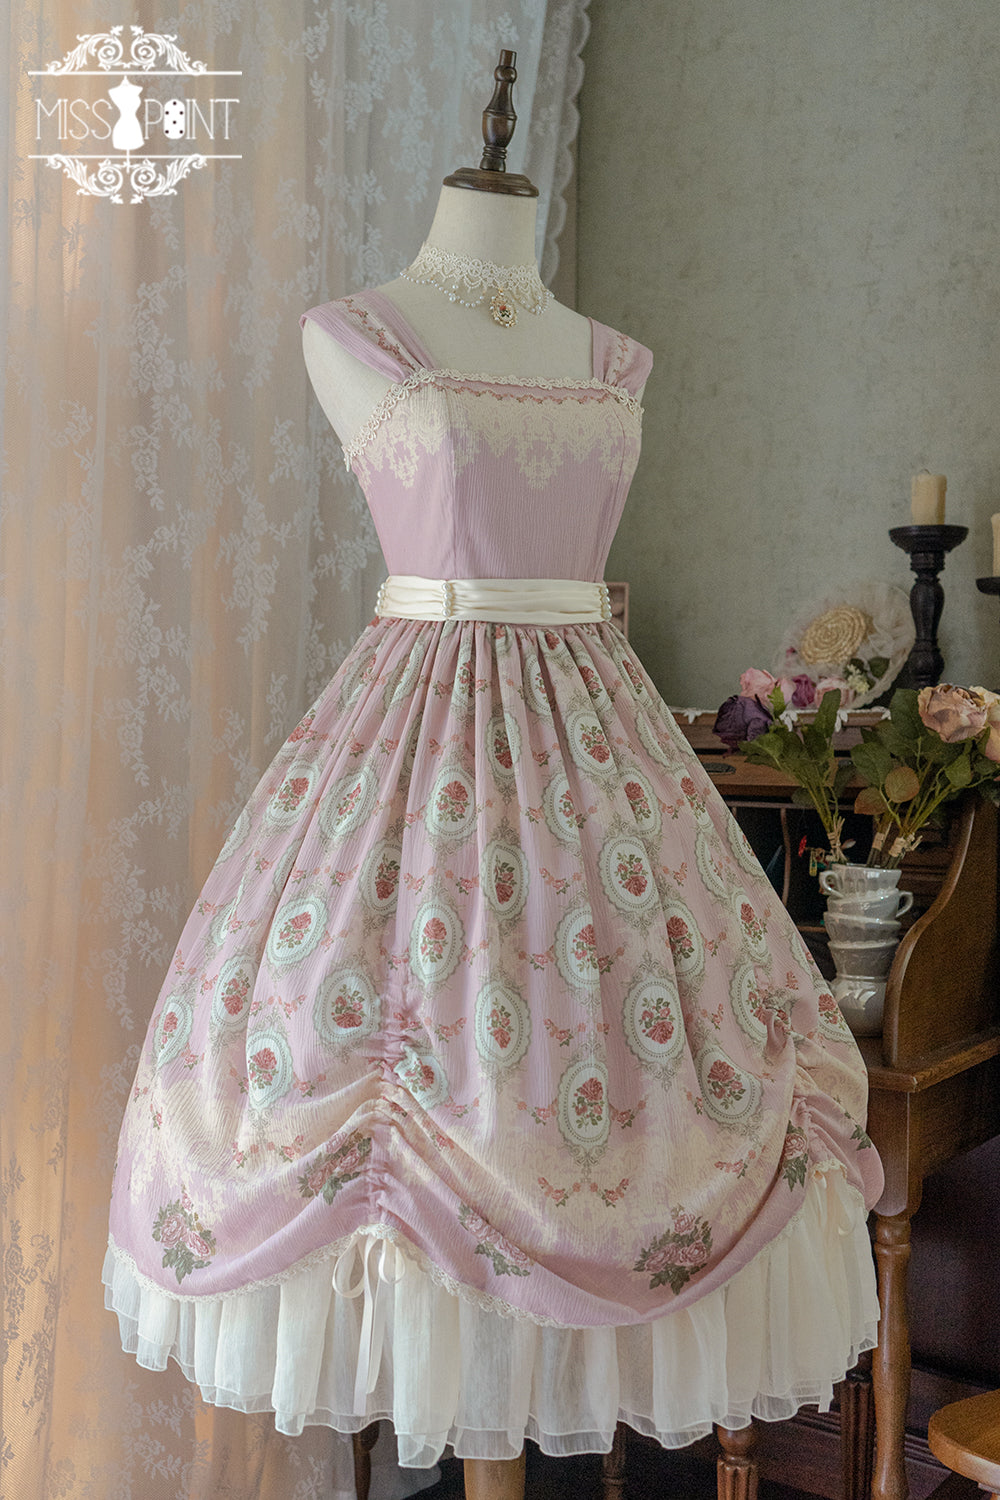 Find fragrance floral print jumper skirt